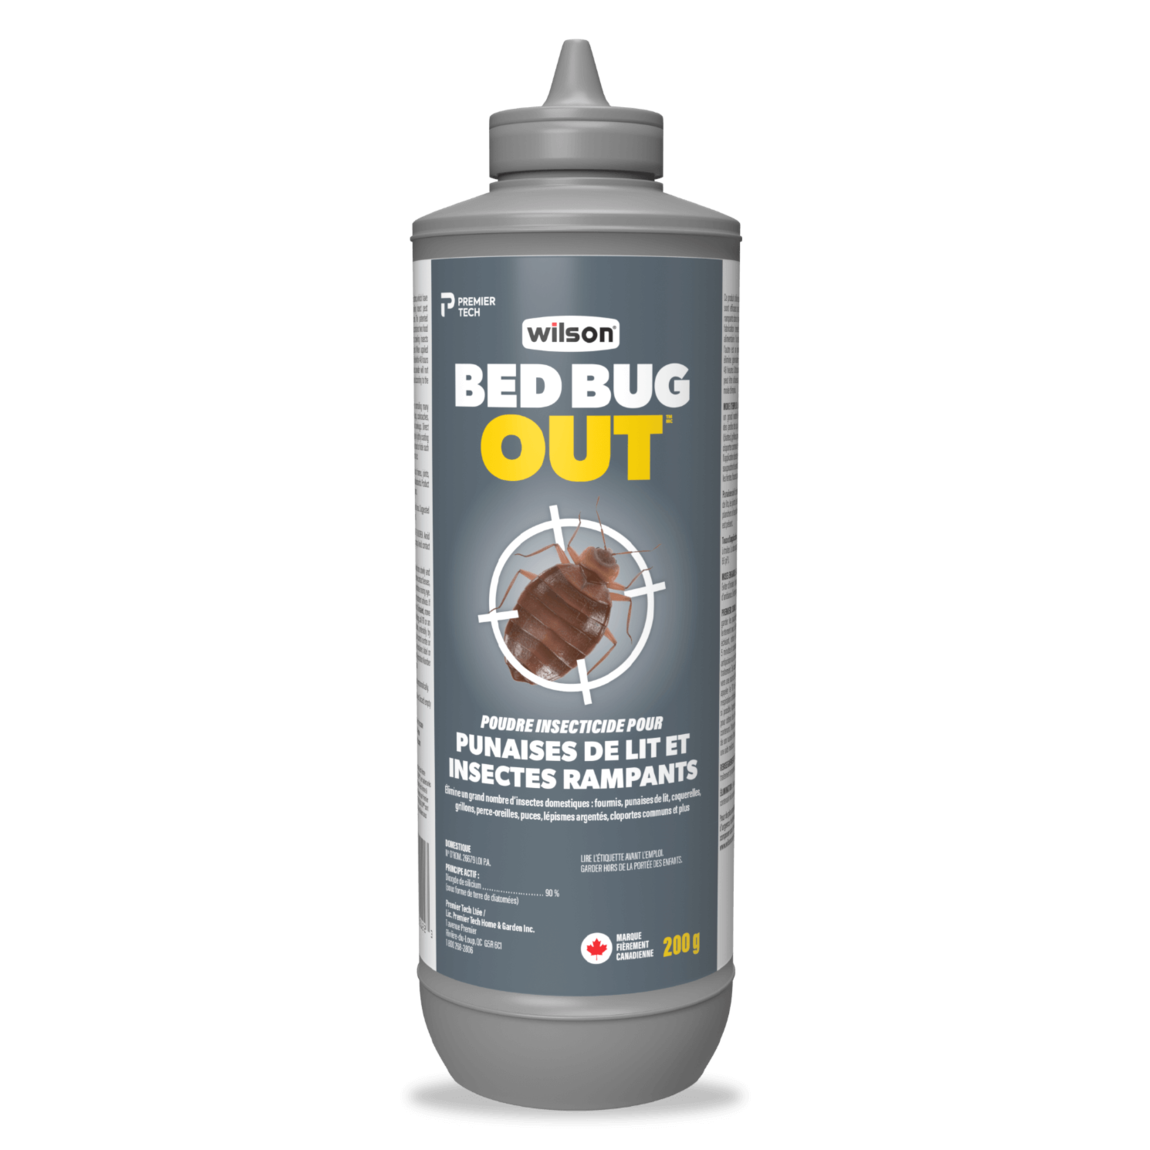 Poudre insecticide pour punaises de lit et insectes rampants BED BUG OUT de  Wilson